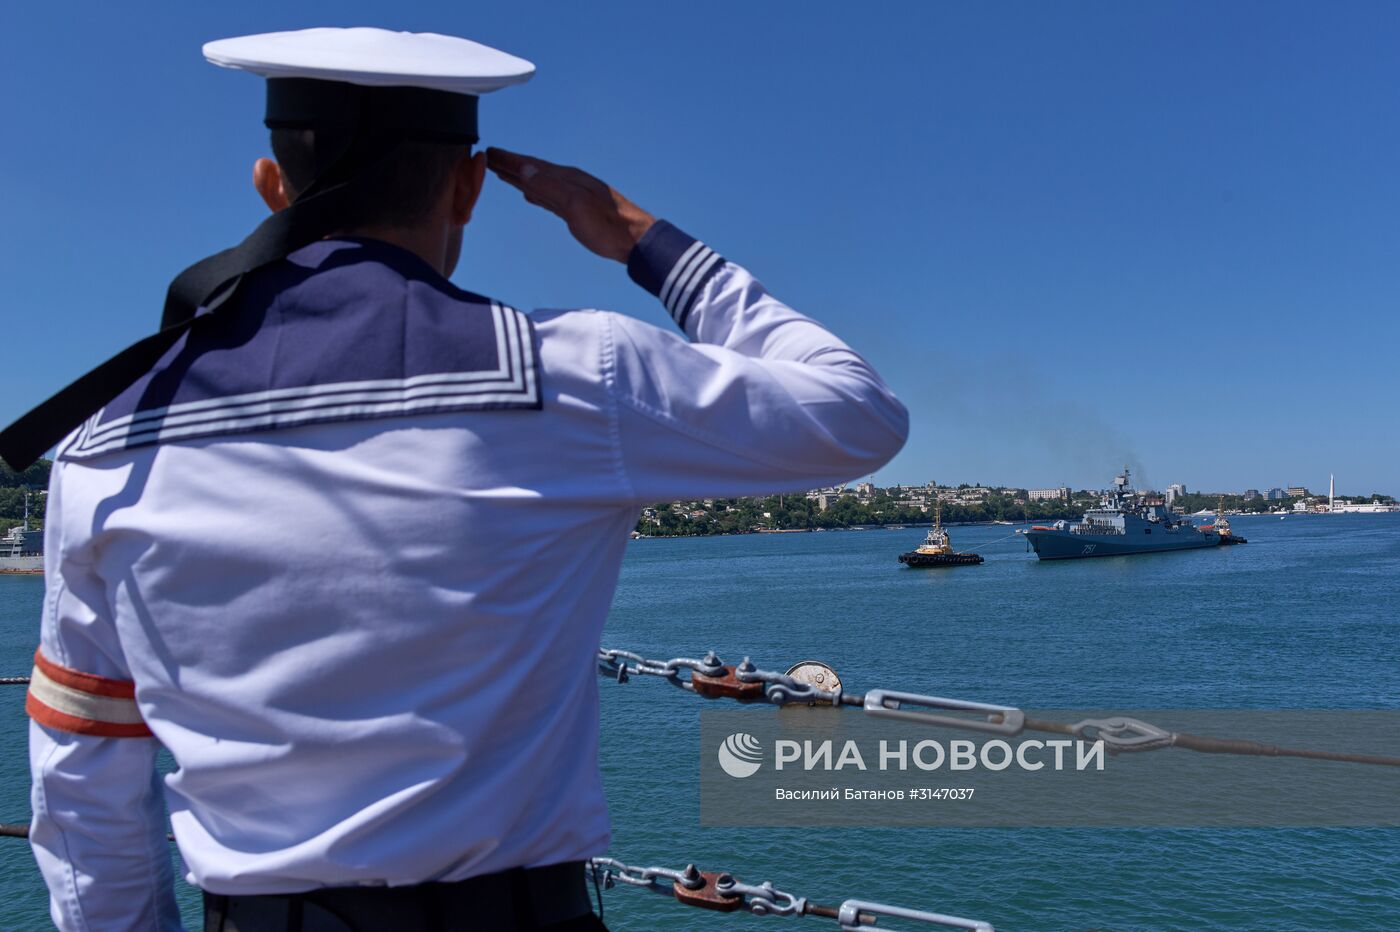 Фрегат "Адмирал Эссен" прибыл в Севастополь